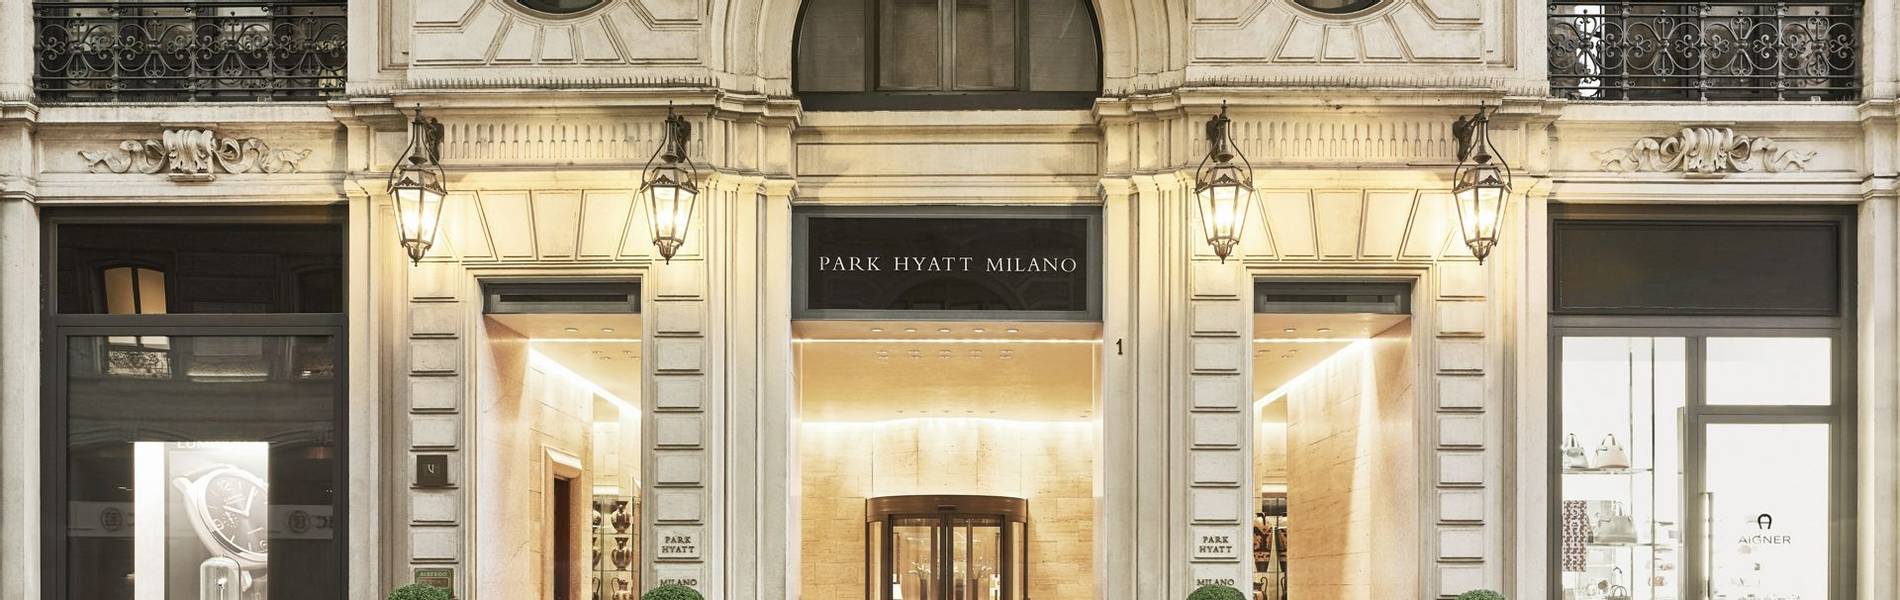 Park-Hyatt-Milan-Main-Entrance (1).jpg